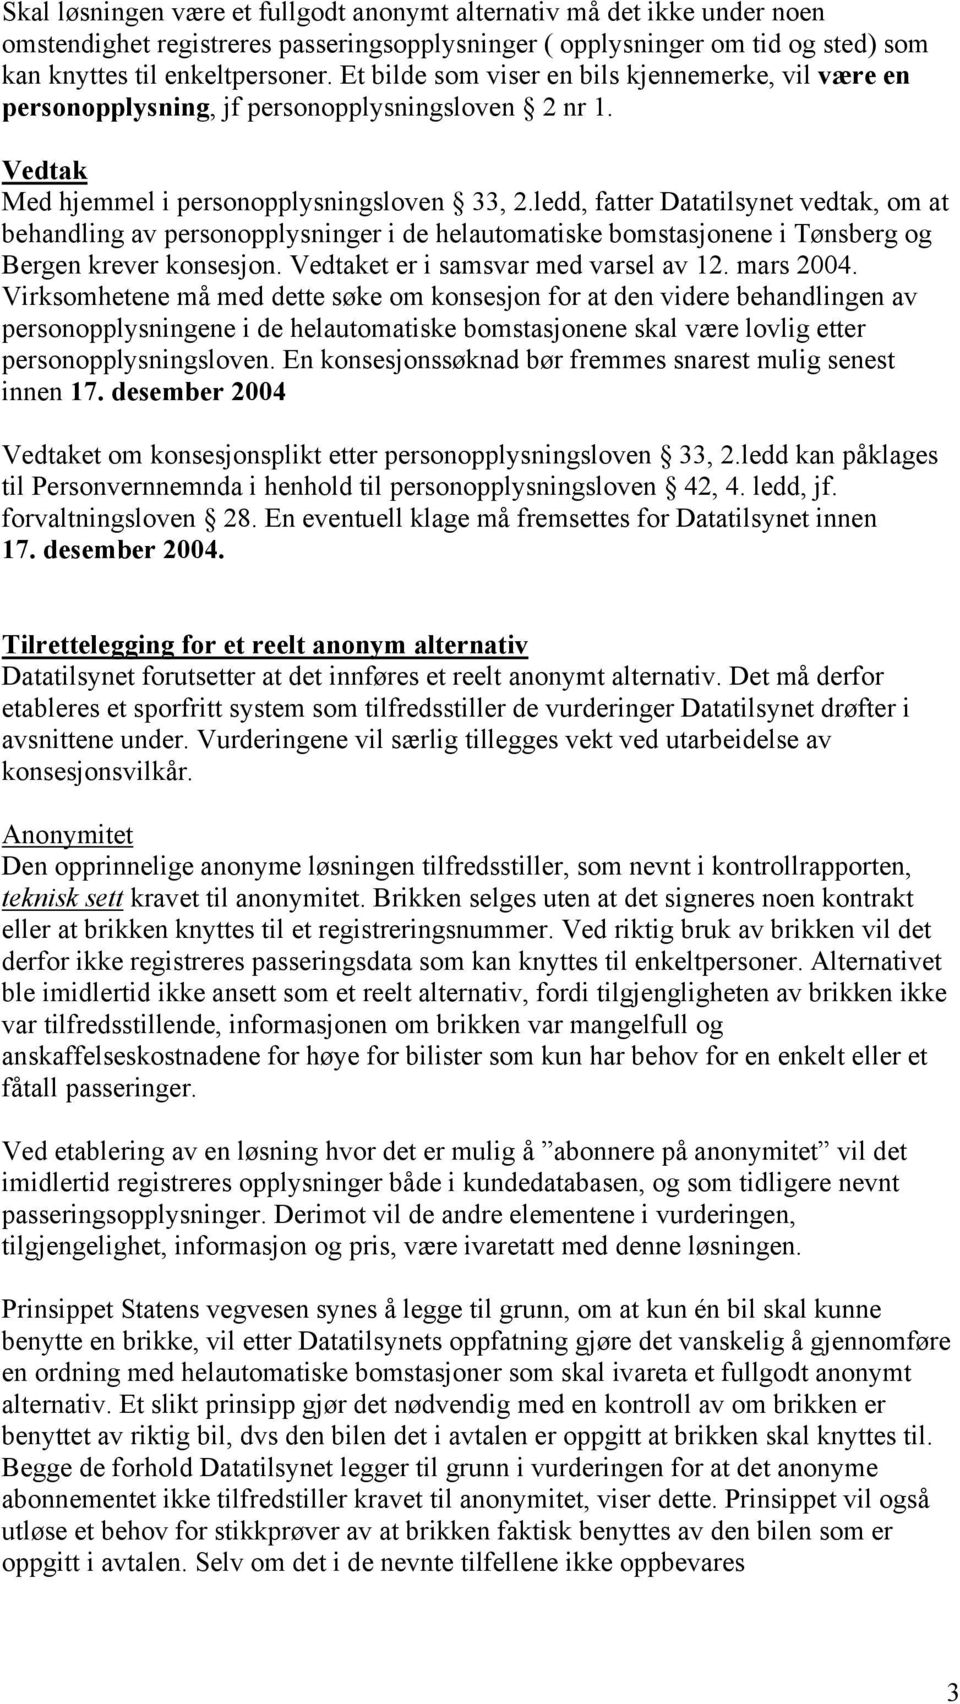 ledd, fatter Datatilsynet vedtak, om at behandling av personopplysninger i de helautomatiske bomstasjonene i Tønsberg og Bergen krever konsesjon. Vedtaket er i samsvar med varsel av 12. mars 2004.